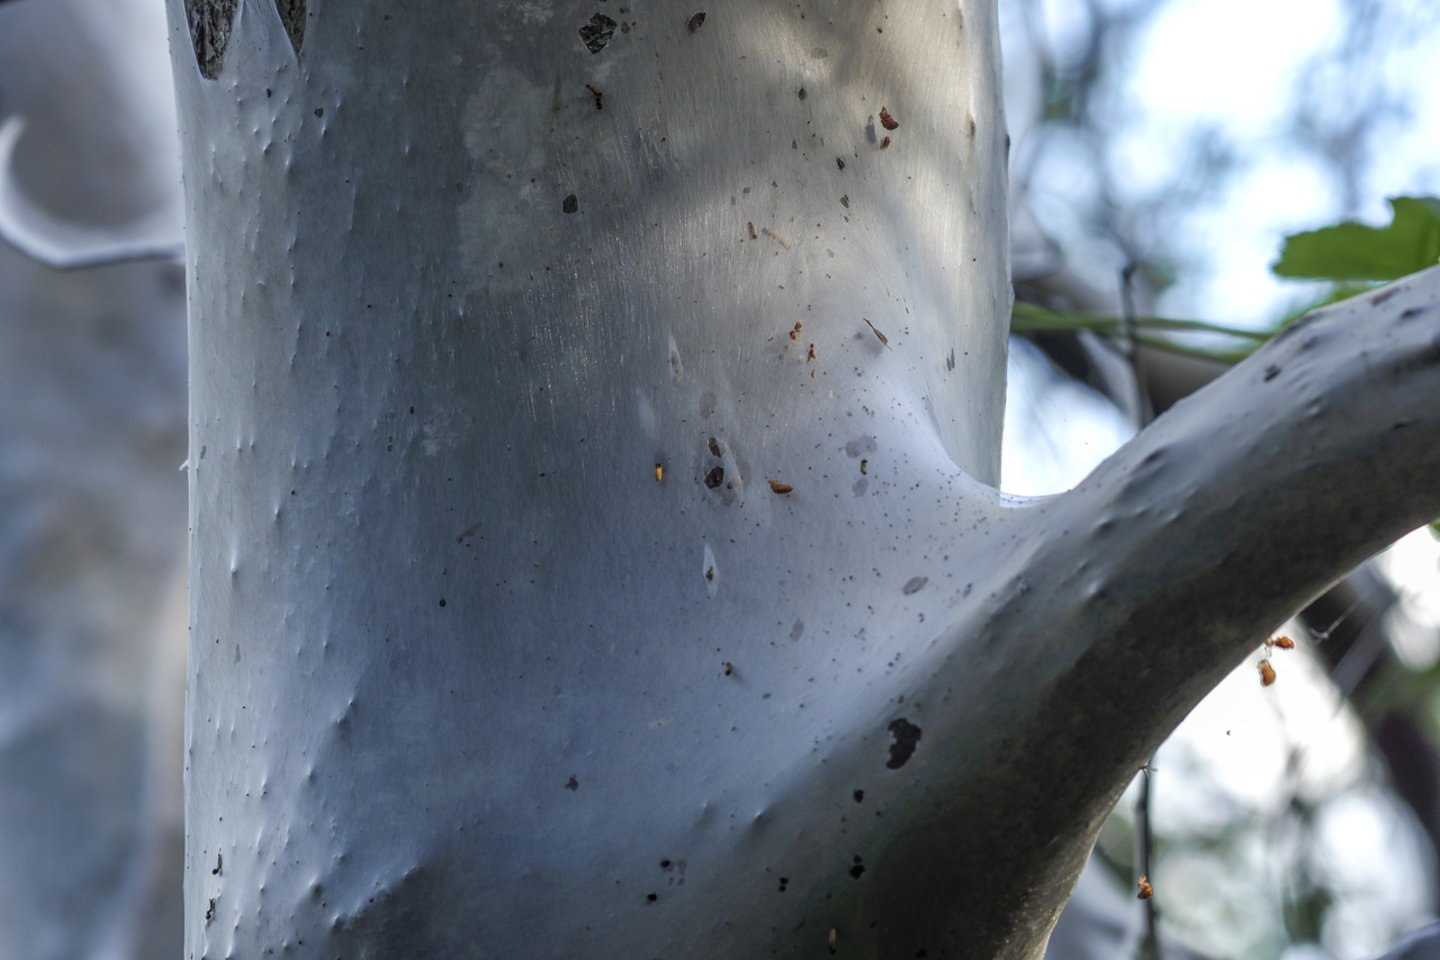  Butėnų kaime aptiktas medis aptrauktas kandžių lervų nunertu tinklu.<br> V. Ščiavinsko nuotr.